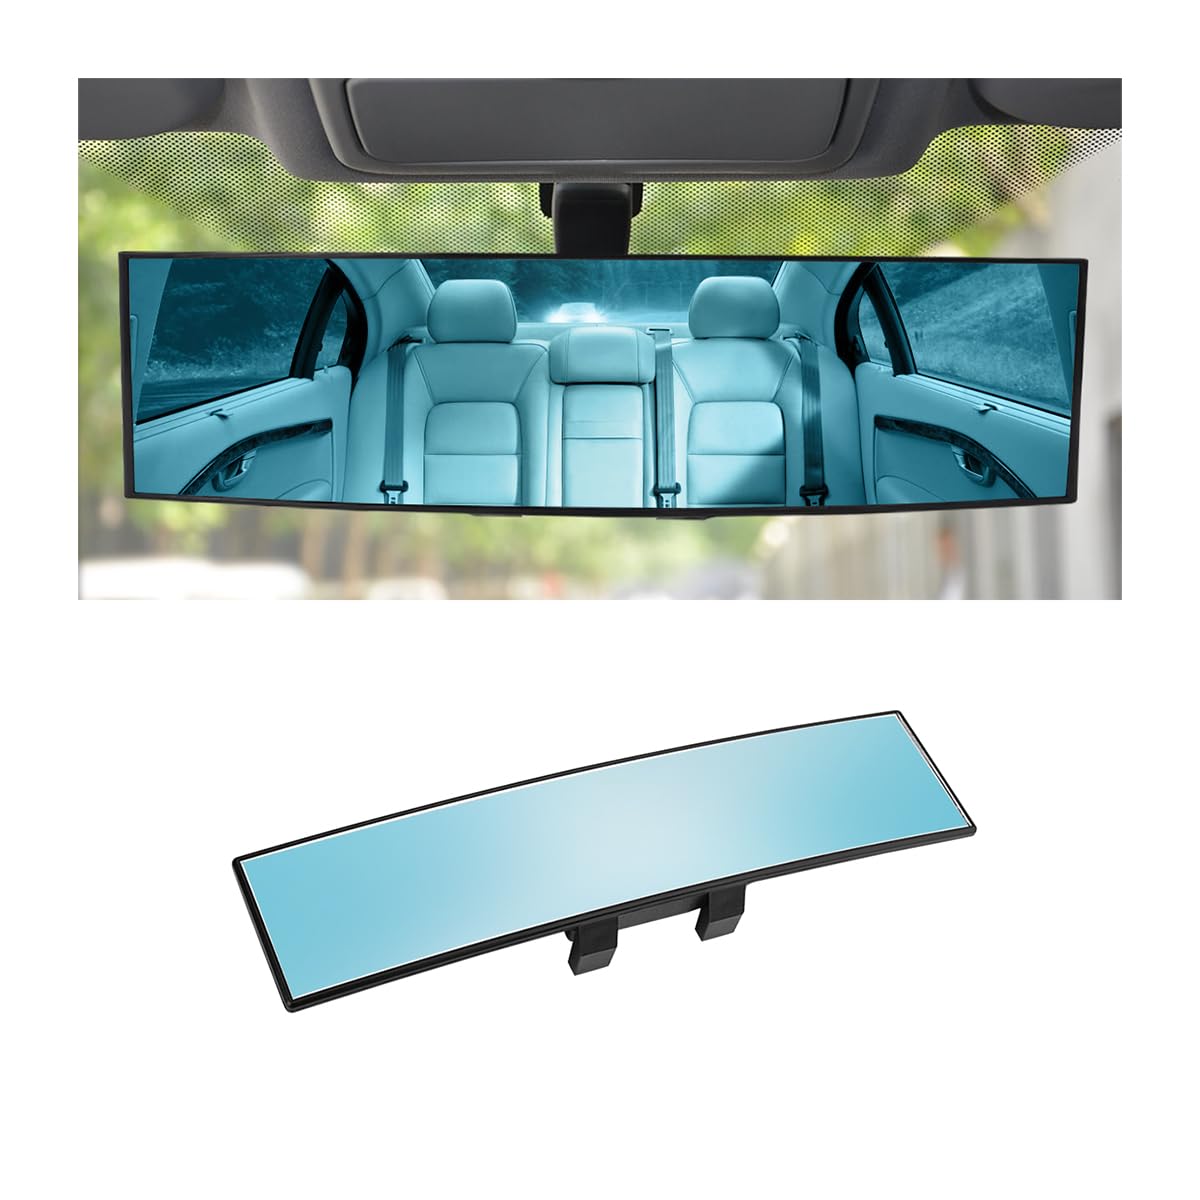 CGEAMDY Auto Rückspiegel, Autospiegel Große Vision Weitwinkel Flachspiegel, Blendschutz Rückspiegel, Universeller Auto Innenspiegel Ersatz für PKWs, SUVs und LKWs (Blau) von CGEAMDY